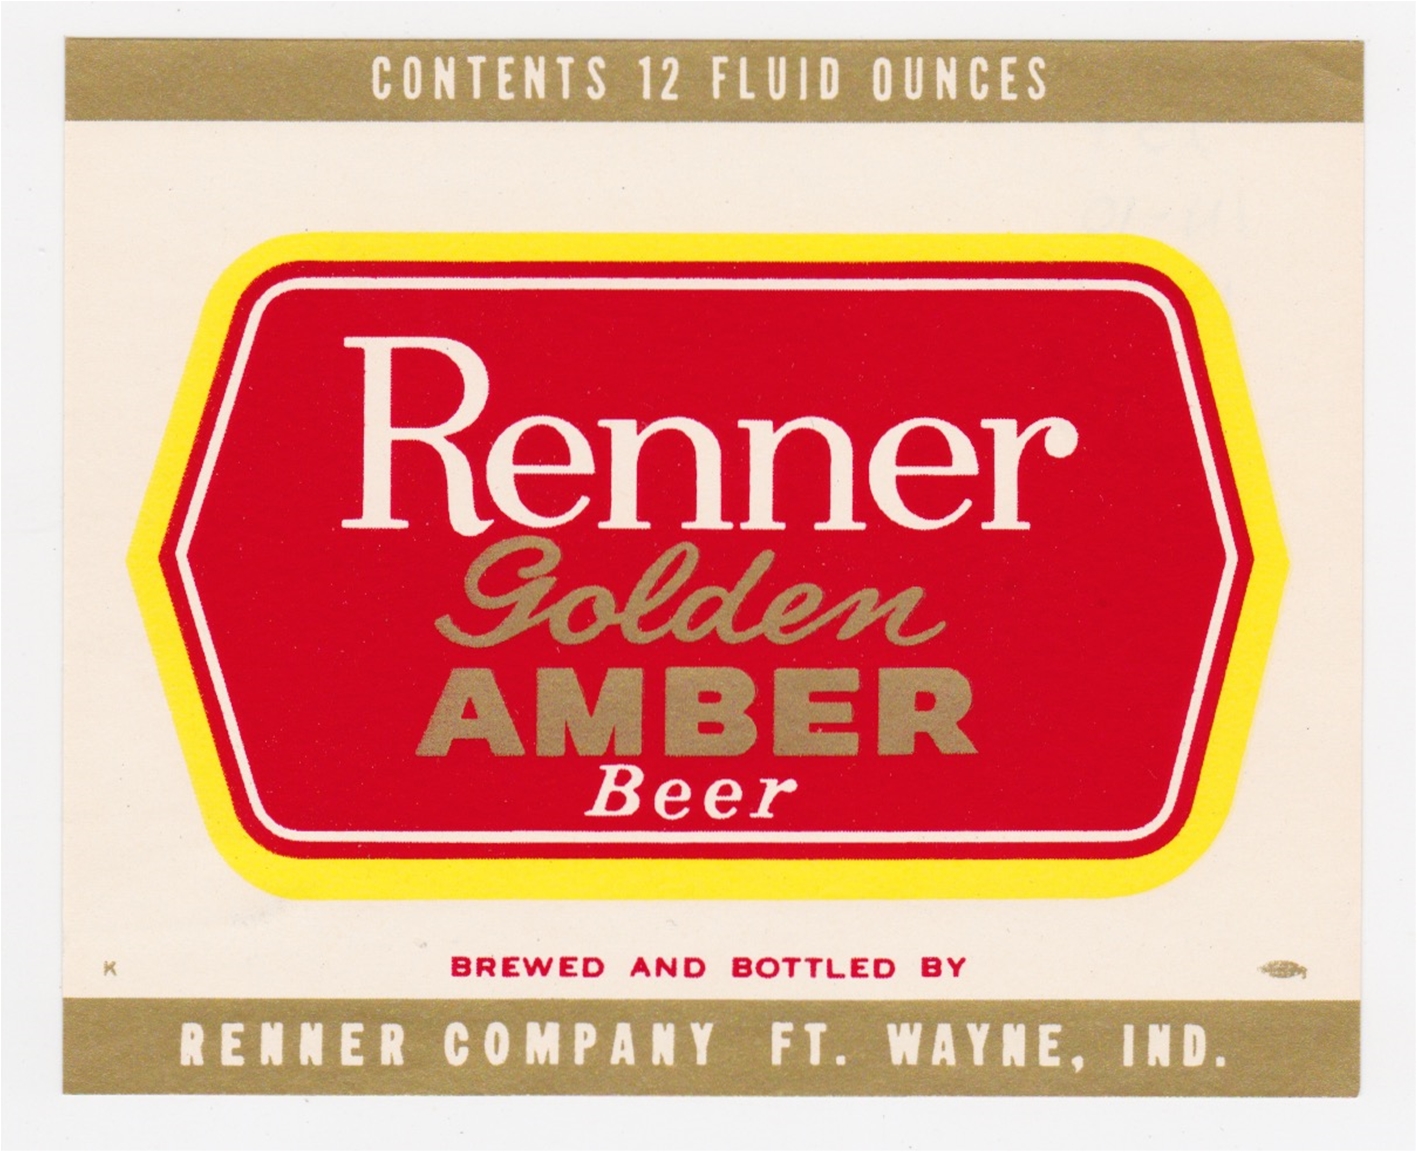 Renner Golden Amber Beer Label